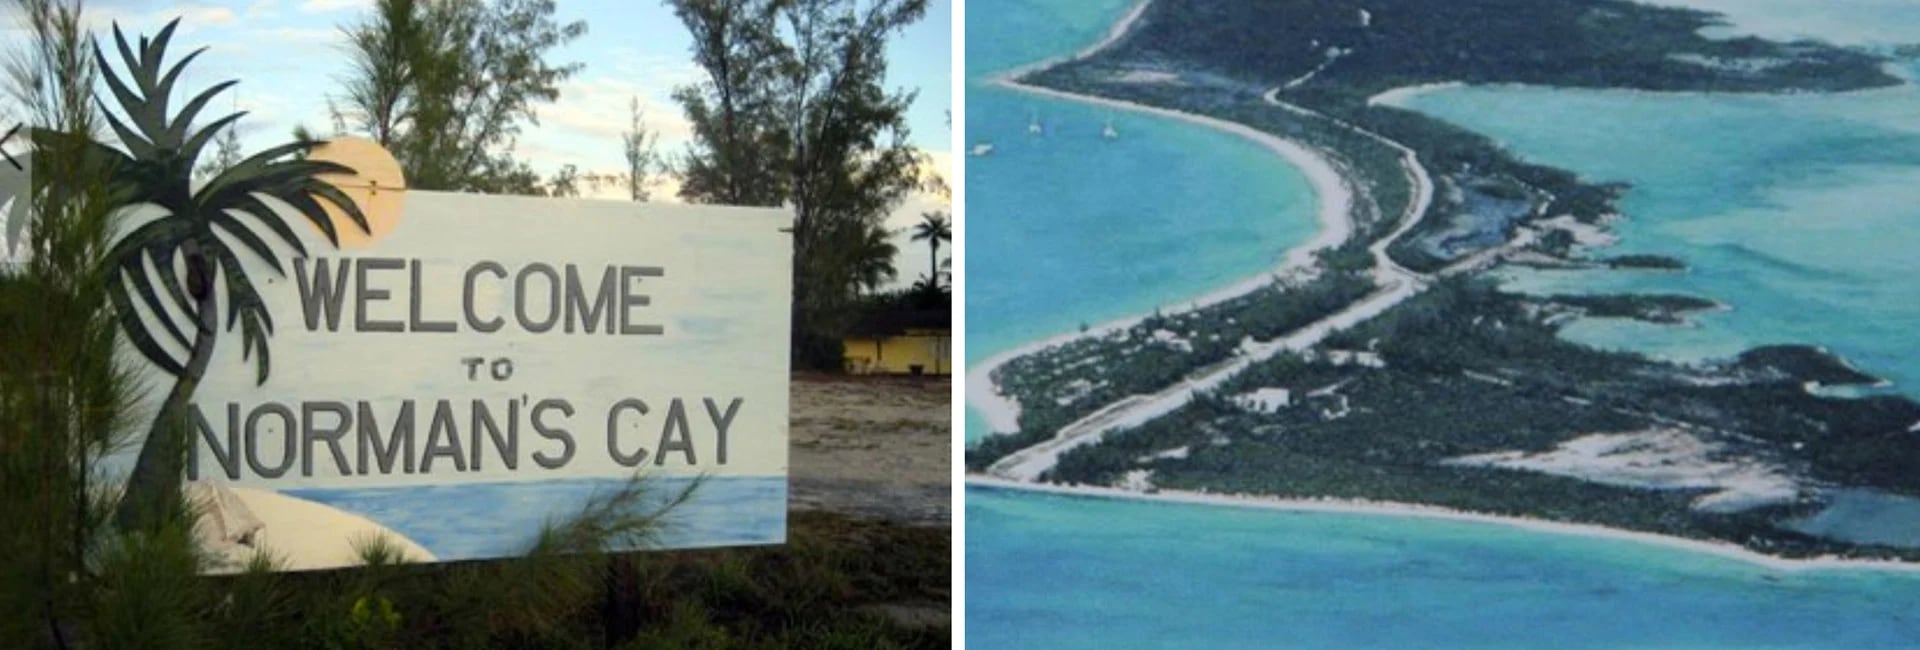 Carlos Lehder, socio de Escobar, compró una isla en las Bahamas para tener una pista clandestina para sus envíos de droga a Miami.